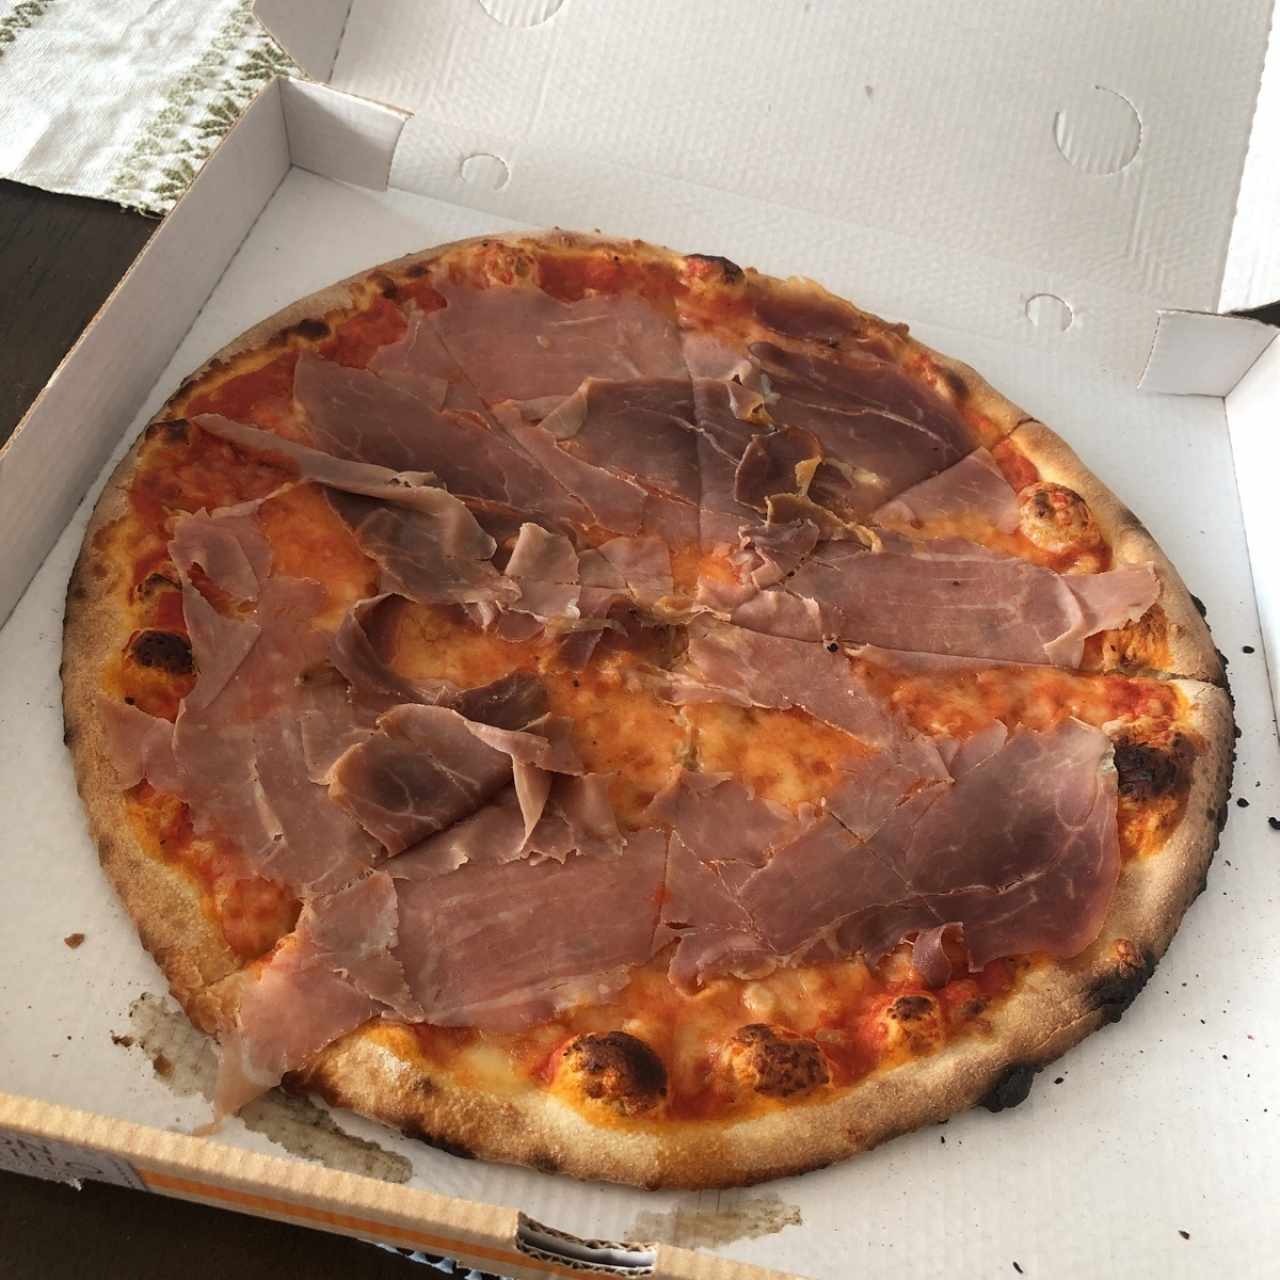 Pizzas - Stizzoli.  fracaso total entrega a domicilio